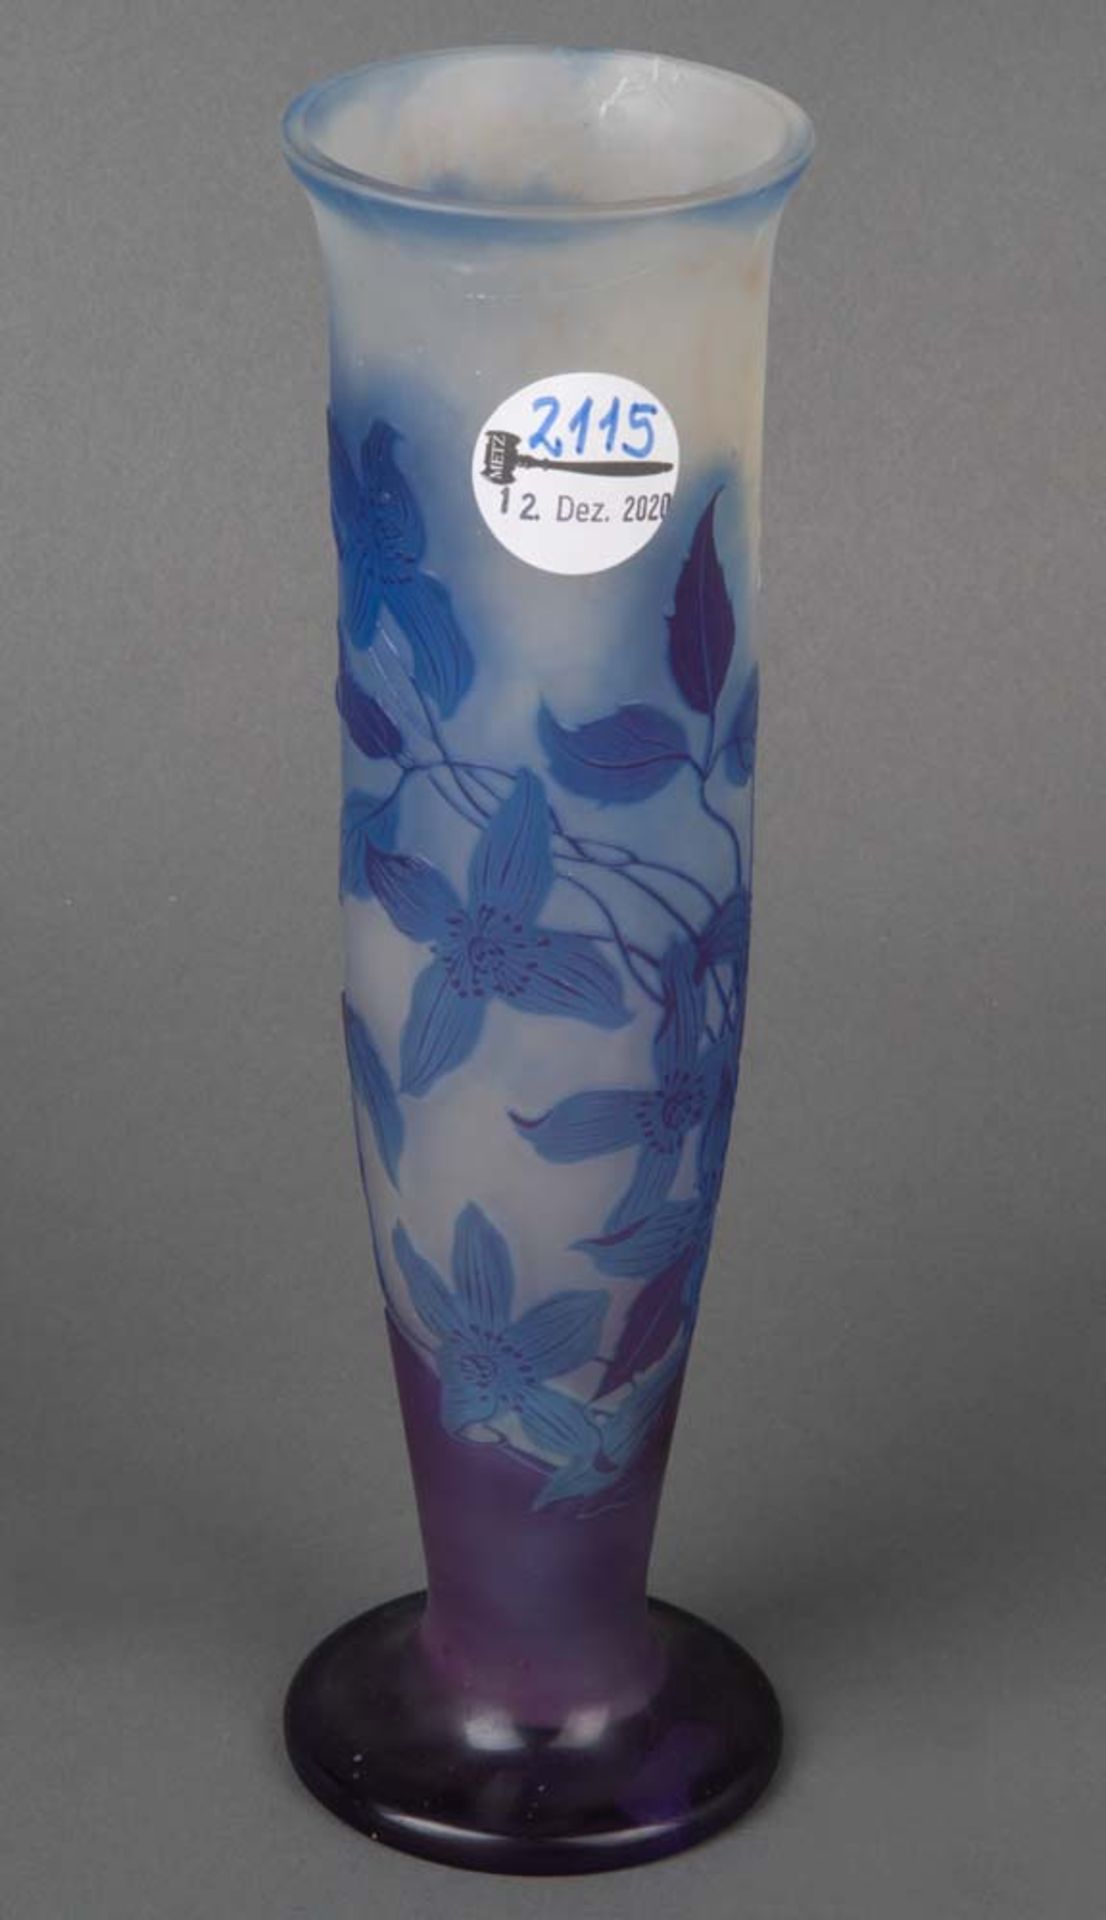 Jugenstil-Vase. Nancy, Émile Gallé um 1900. Farbloses Glas, farbig überfangen, floral geschnitten